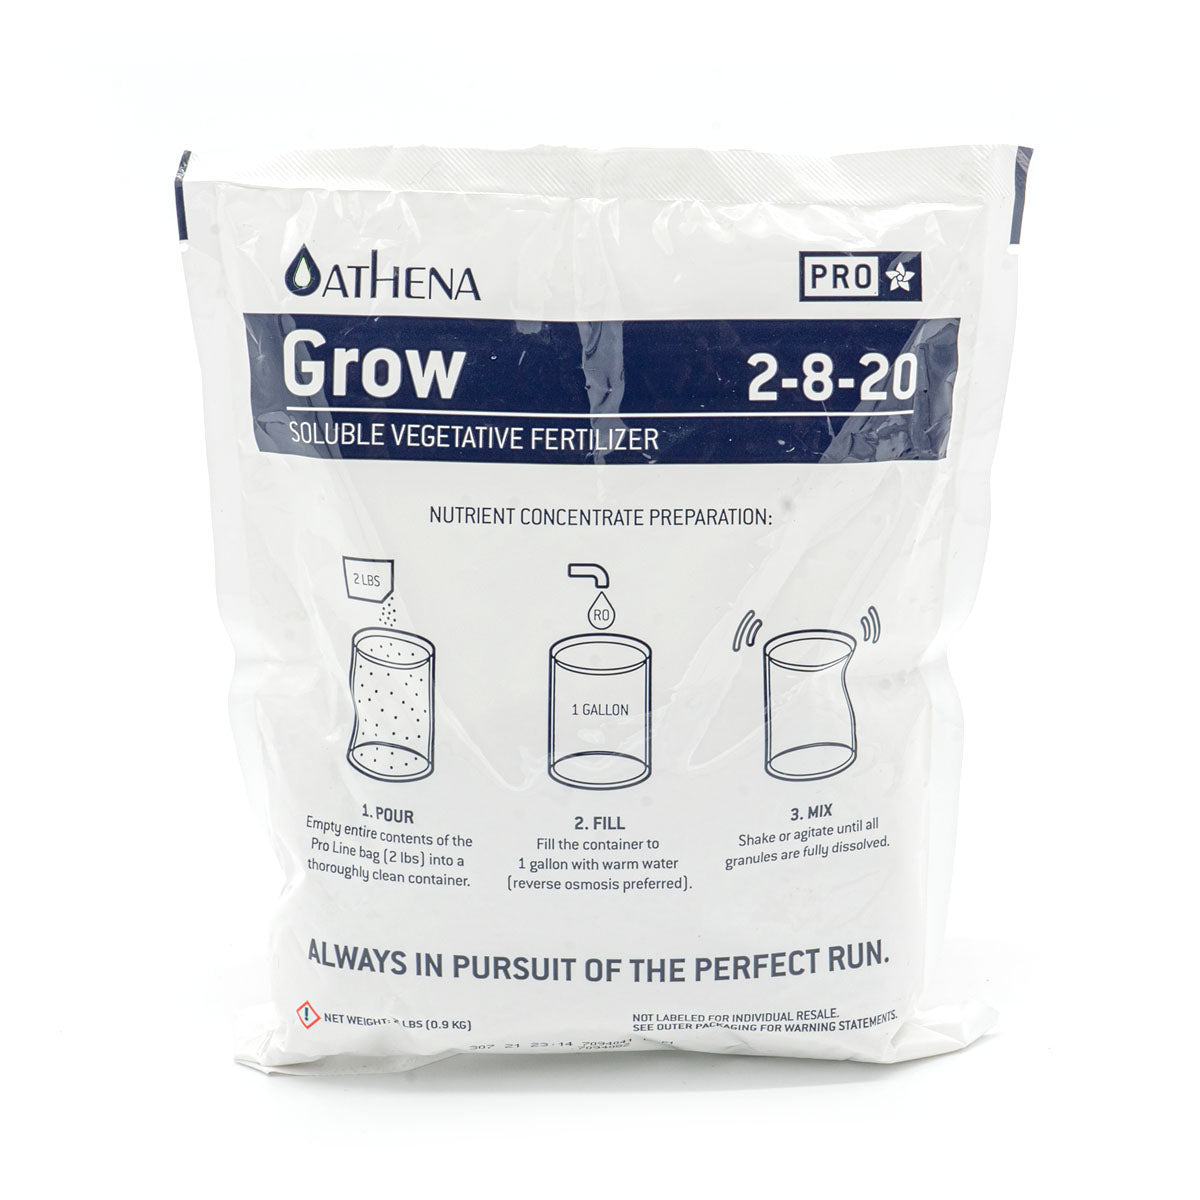 Athena Pro grow, Athena grow pro line 2 pound